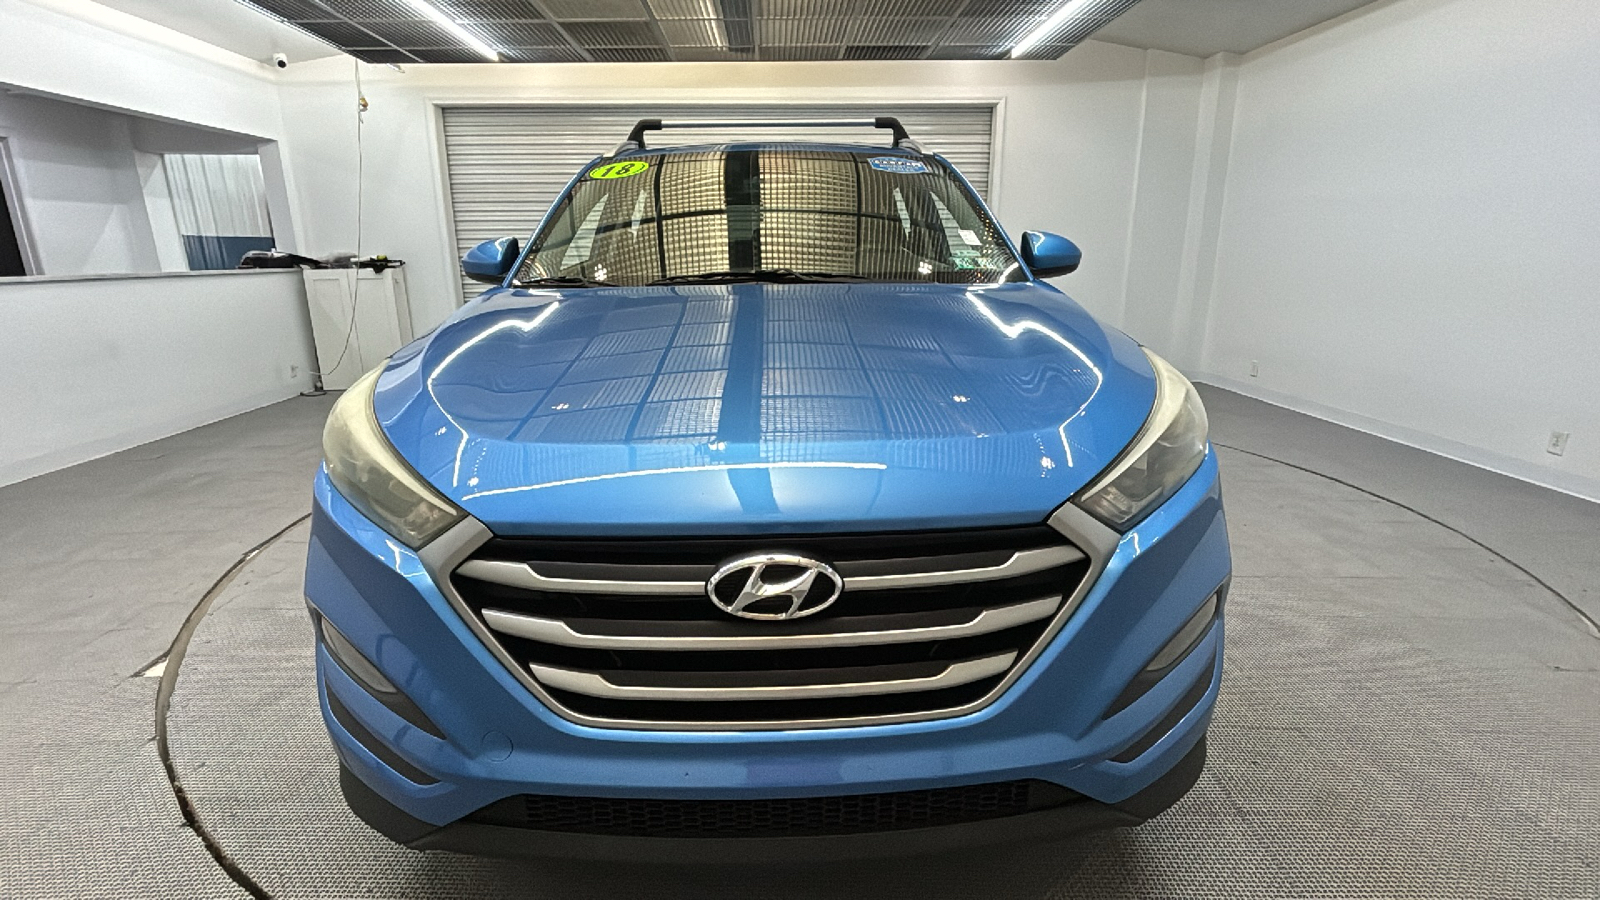 2018 Hyundai Tucson SEL 8